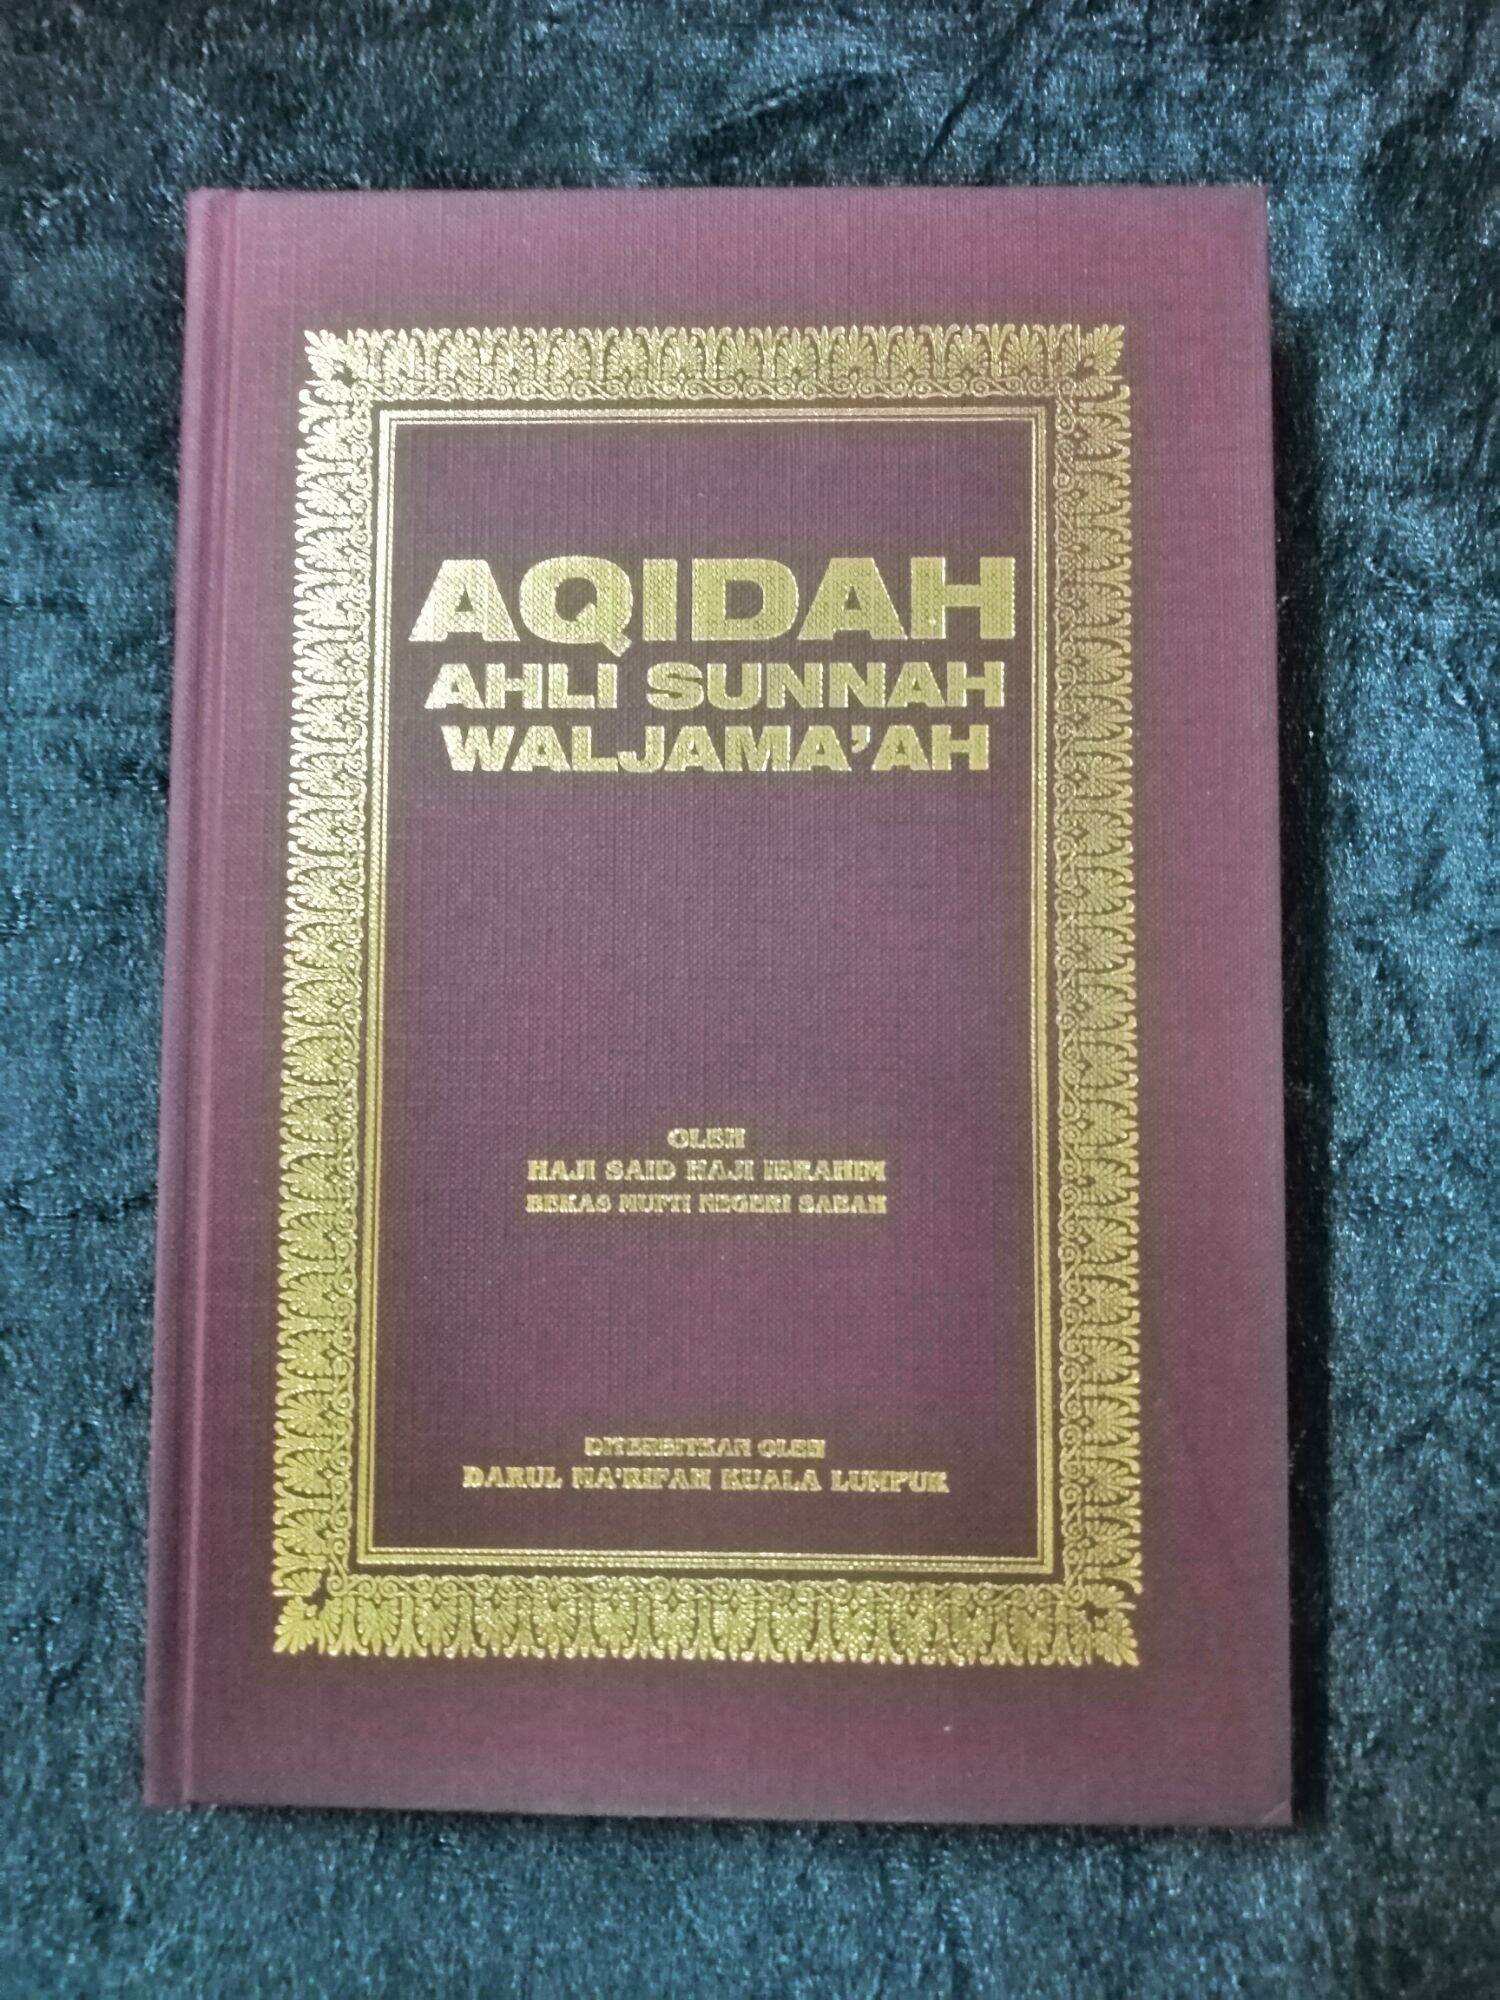 Buku Aqidah edisi RUMI Ahli Sunnah Waljamah Buku Malaysia